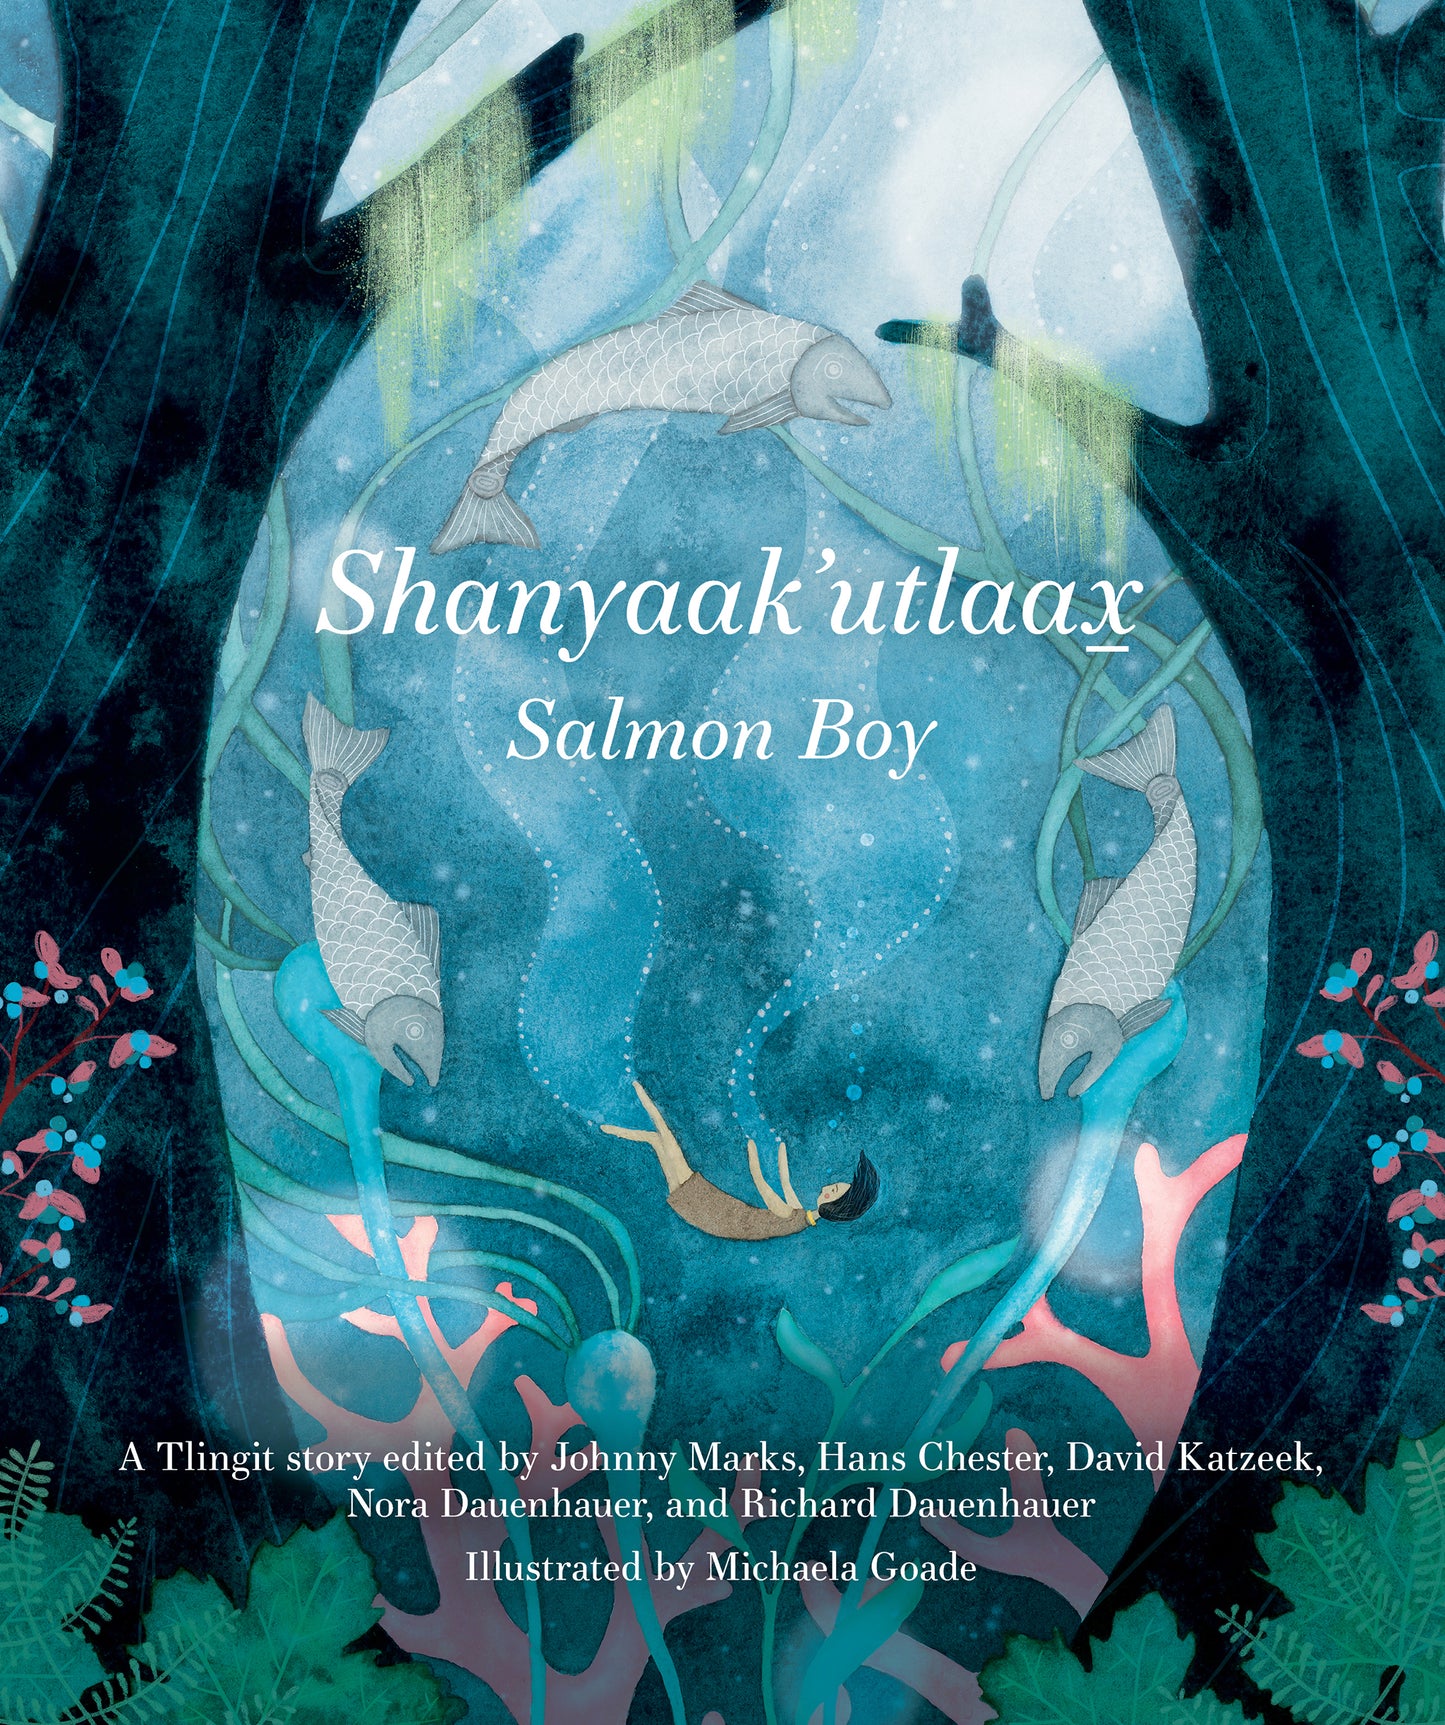 Book, BRR - "Shanyaak'utlaax: Salmon Boy"